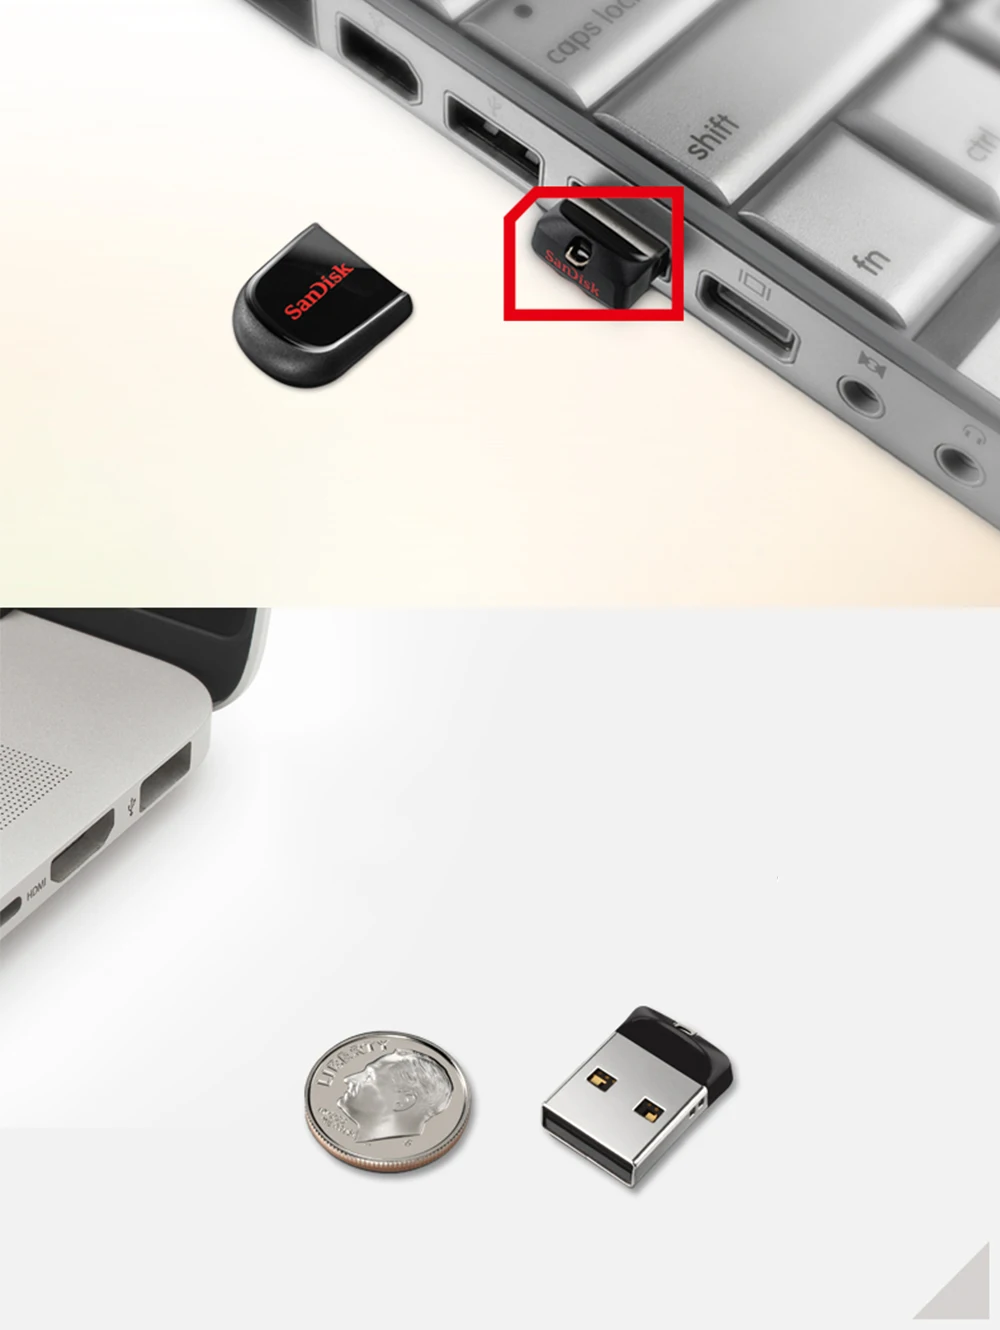 SanDisk Fit CZ33 супер мини USB флеш-накопитель 64 ГБ USB 2,0 флеш-накопитель 32 Гб карта памяти s 16 Гб U дисковый накопитель